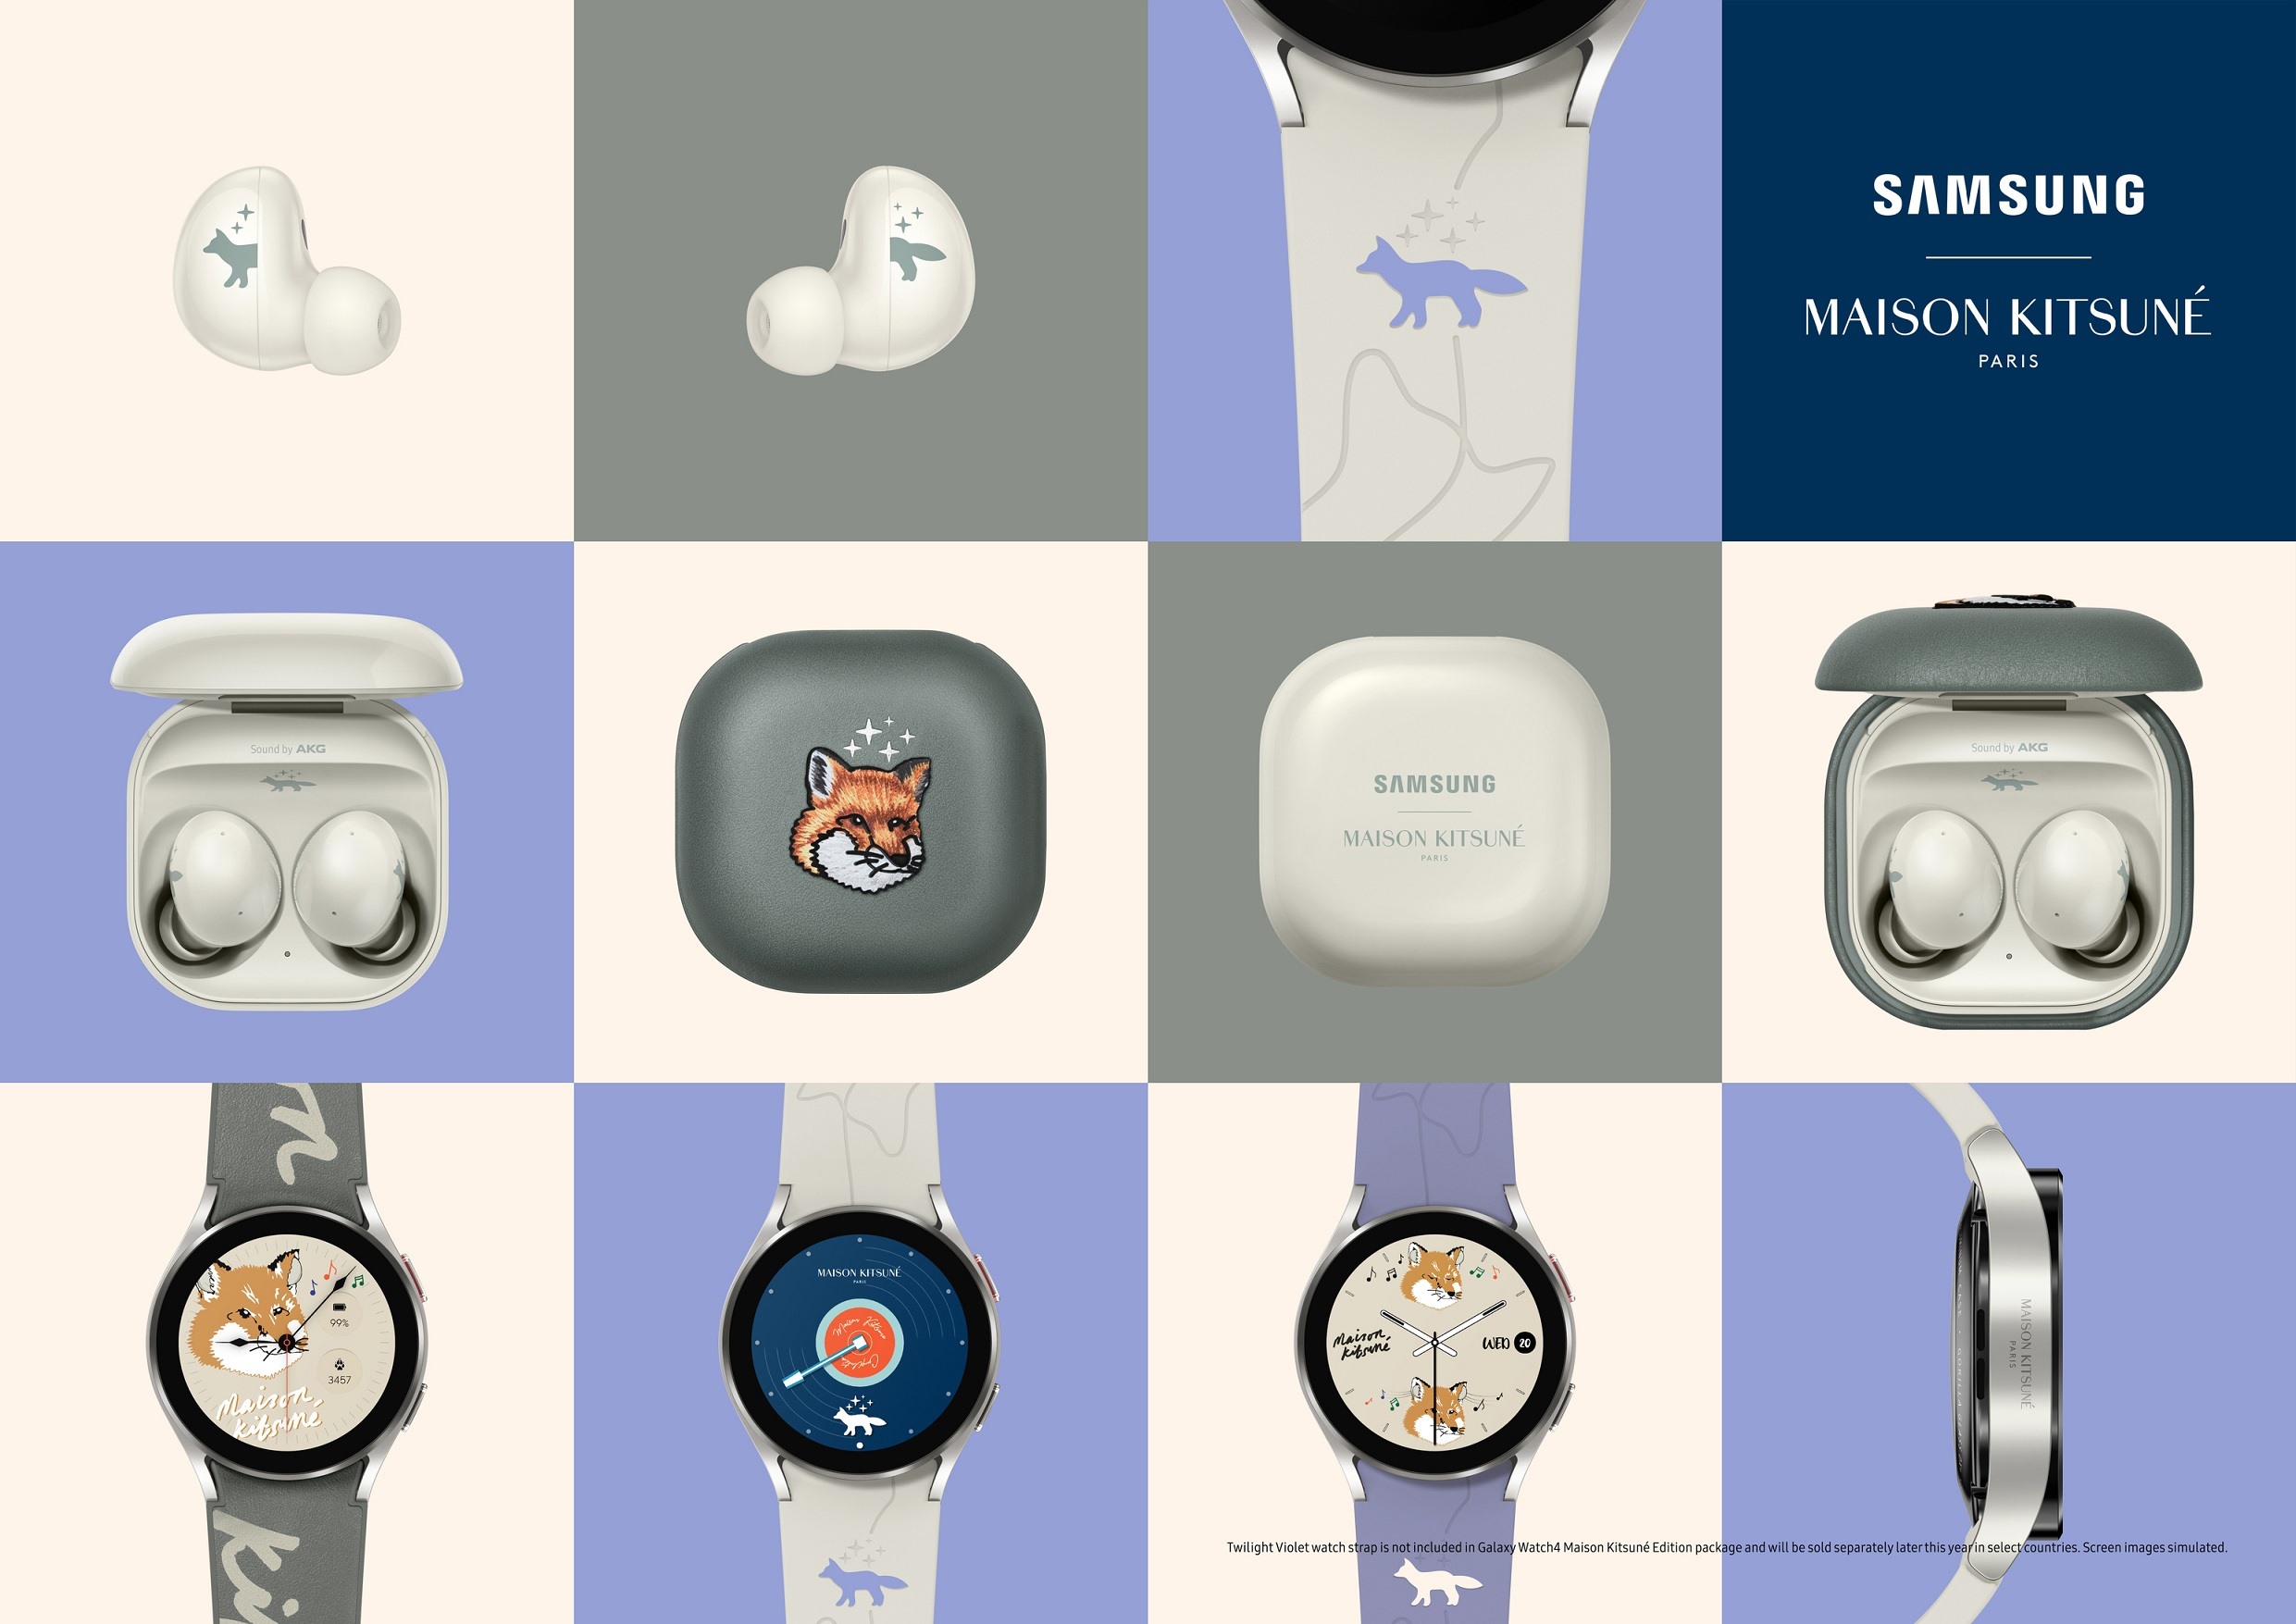 ซัมซุงแนะนำดีไวซ์ใหม่ ตอบโจทย์สาย Personalized ในงาน Samsung Galaxy Unpacked Part 2 พร้อมเปิดพรีออเดอร์ผลงานคอลแลปครั้งใหม่ Galaxy Watch4 และ Galaxy Buds2 Maison Kitsuné Edition ในไทยแล้ววันนี้!   